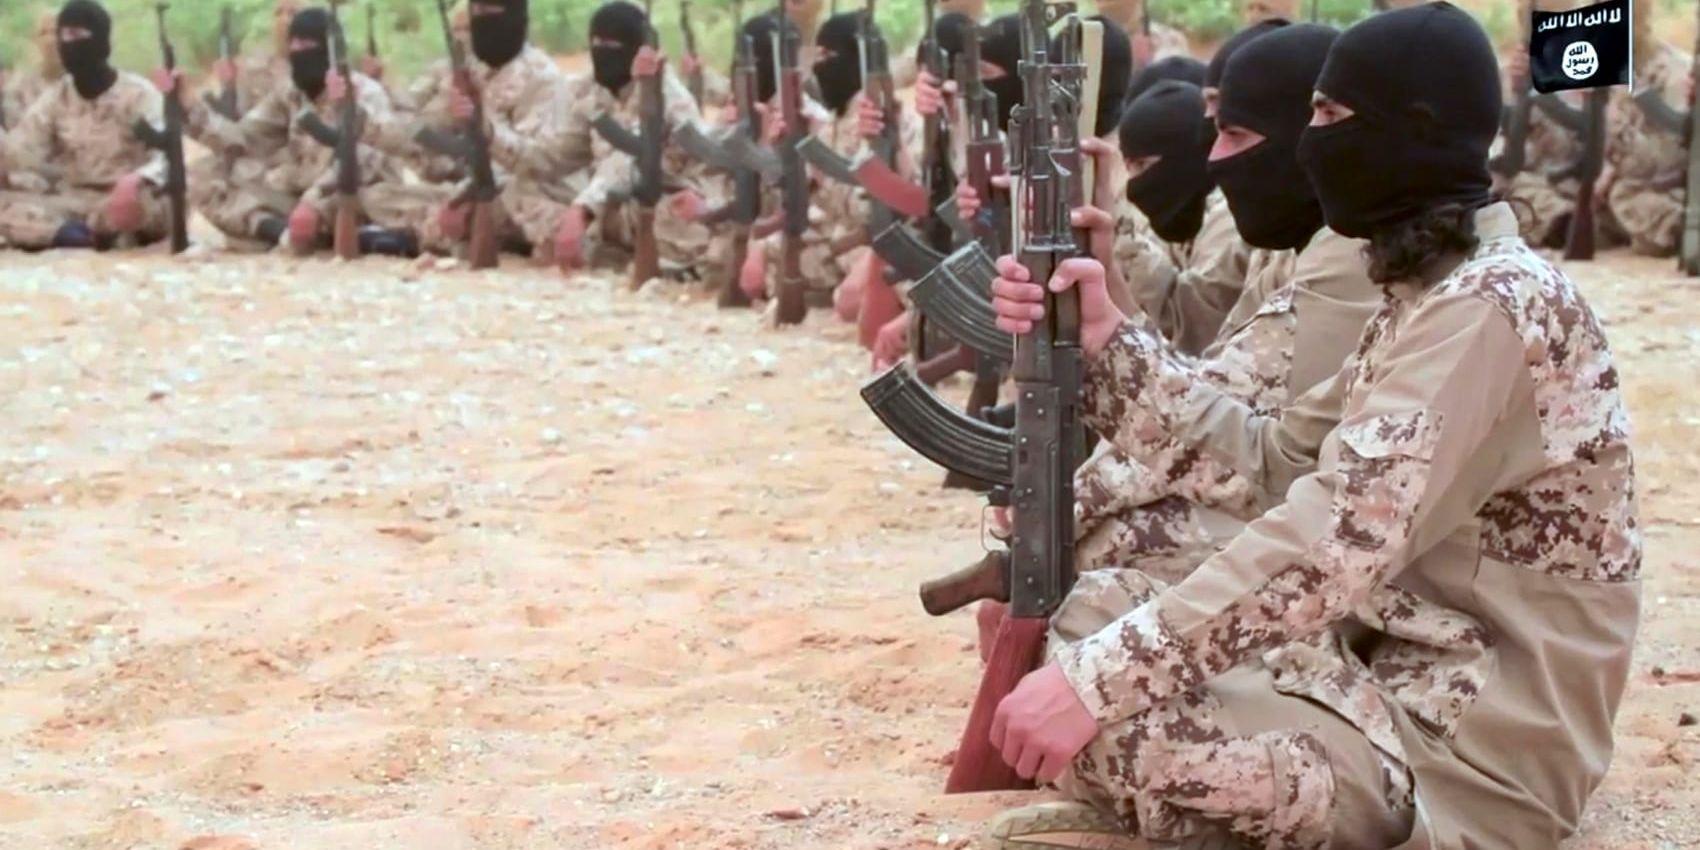 Vissa andra europeiska länder utreder alla misstänkta IS-terrorister som kommer tillbaka för brott direkt – men inte Sverige. Arkivbild.